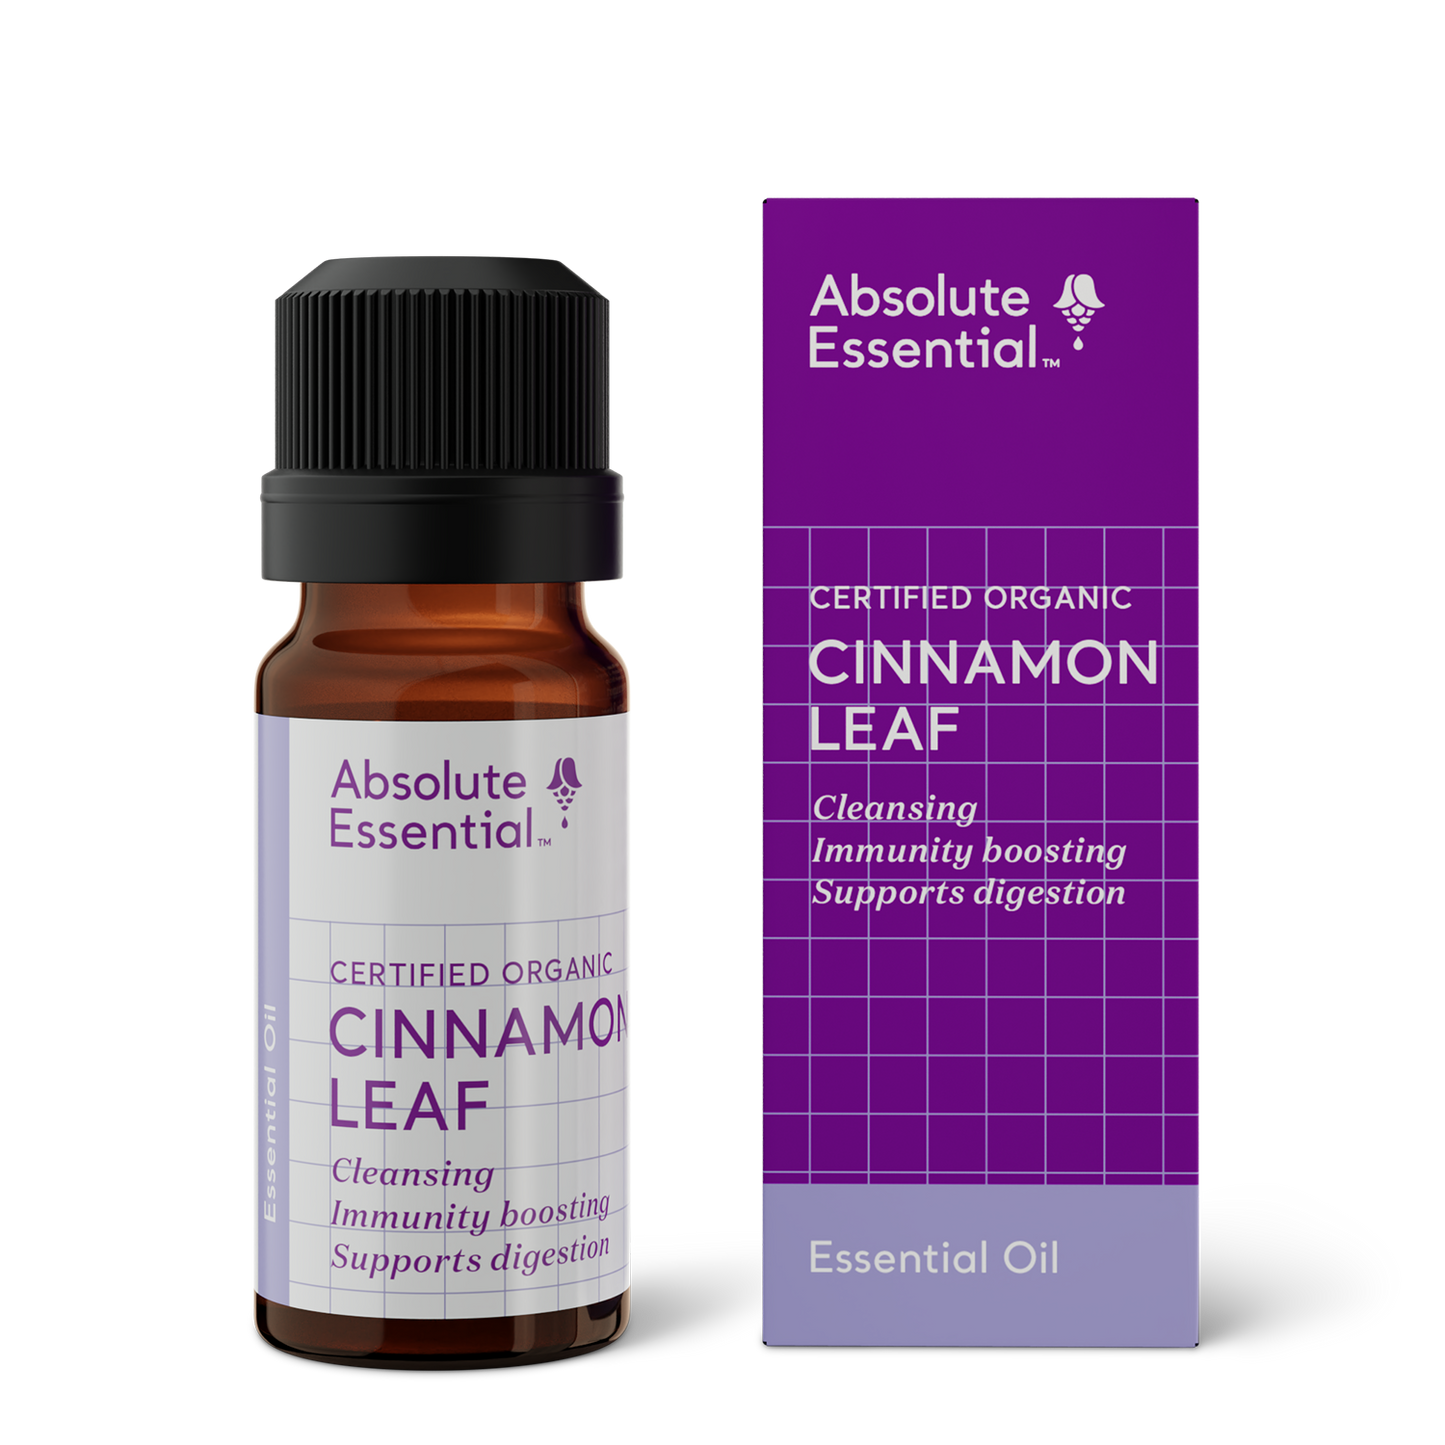 Cinnamon Leaf Essential Oil